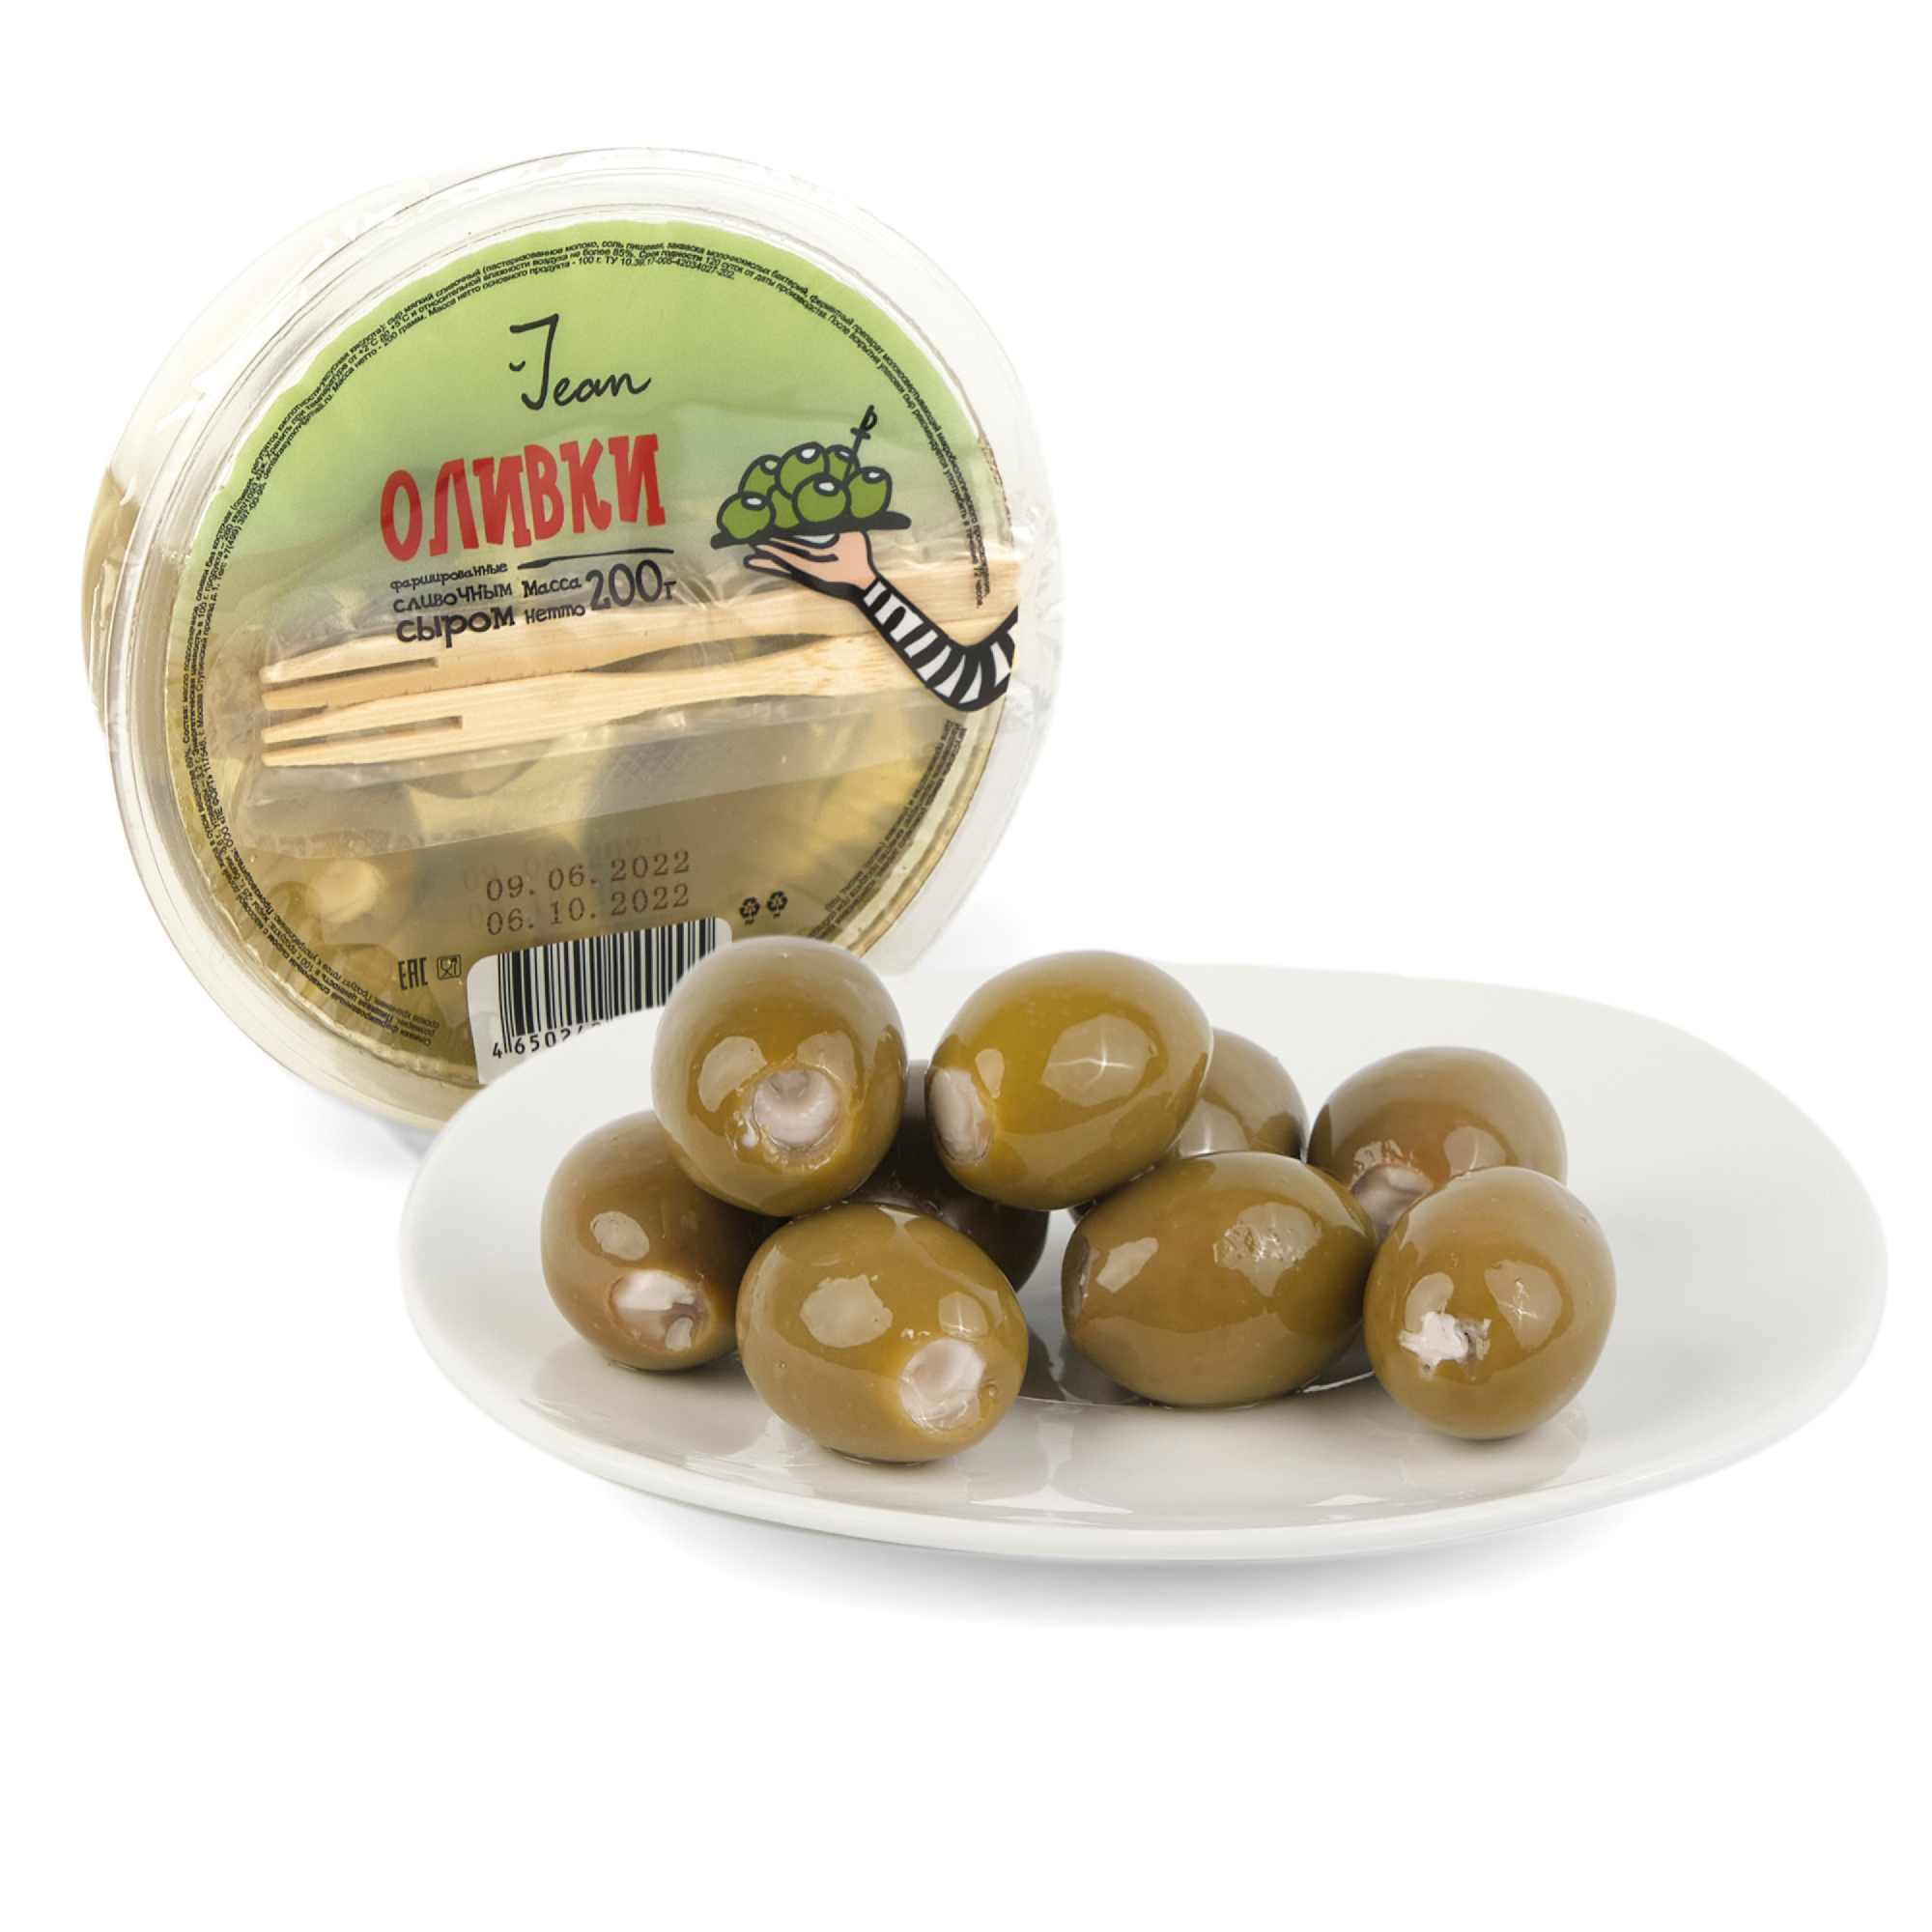 Фаршированные оливки Jean сливочным сыром, 200 г оливки фаршированные сливочным сыром 200г